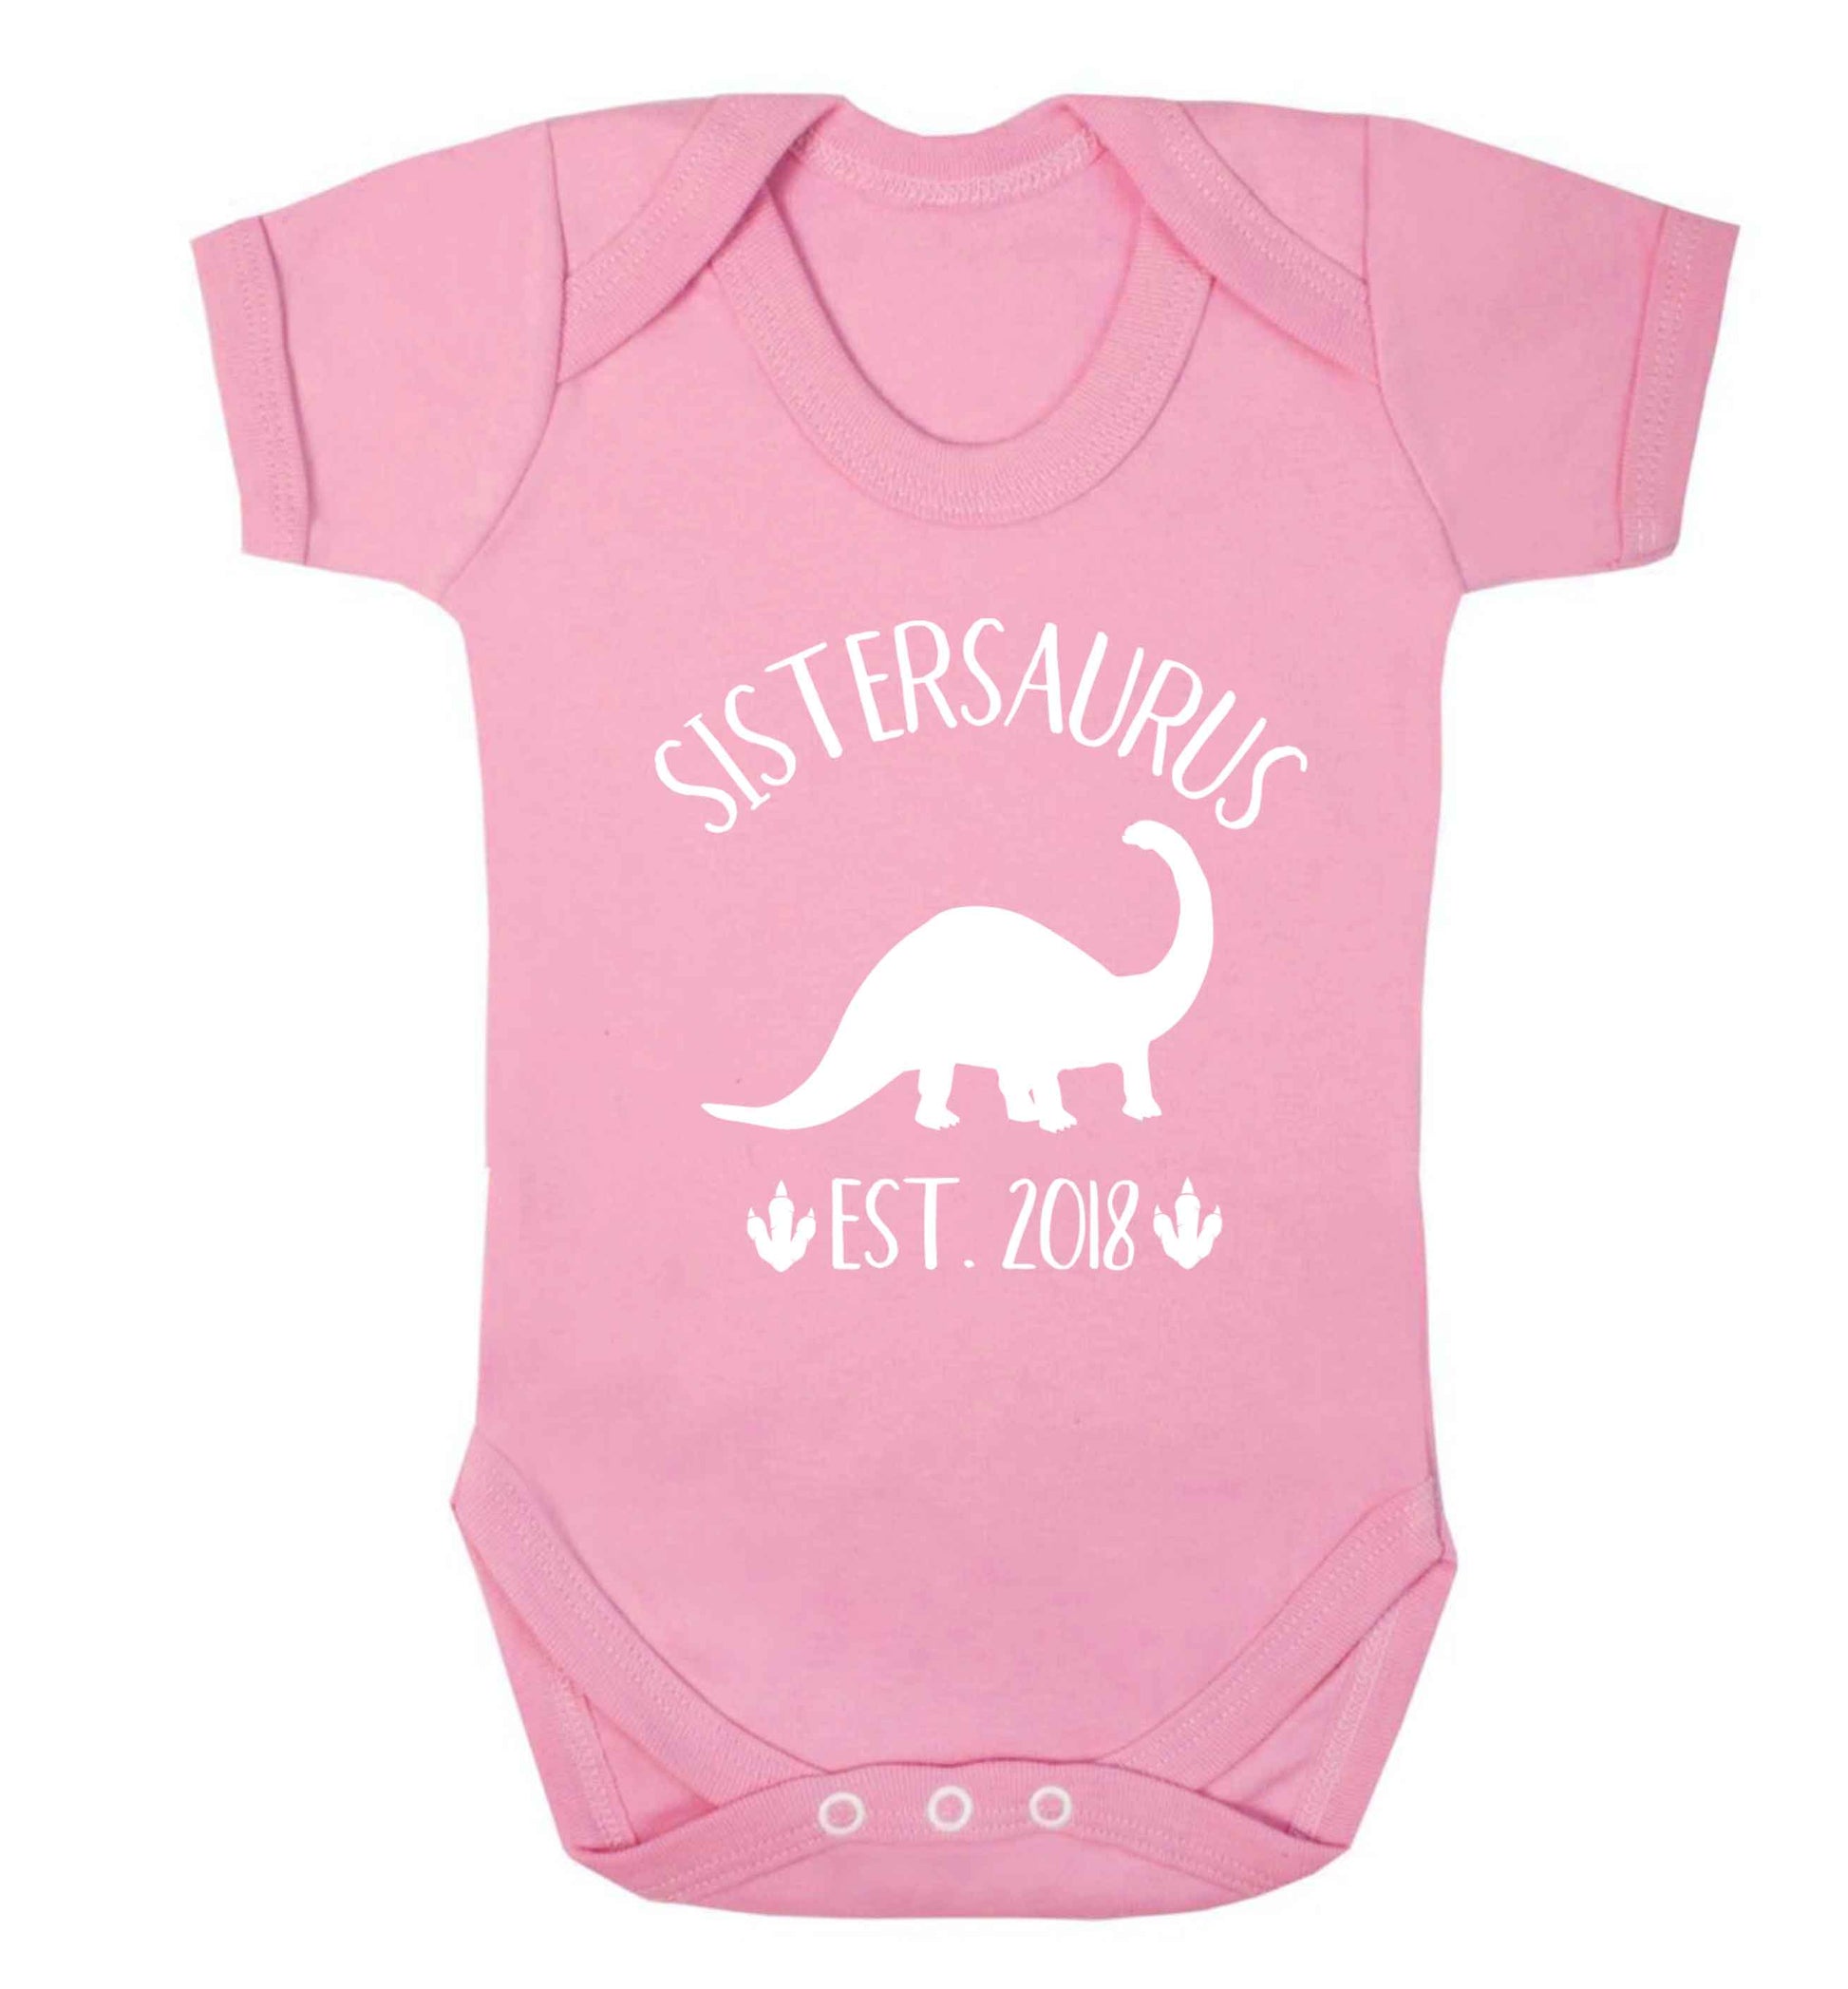 Personalised sistersaurus since (custom date) Baby Vest pale pink 18-24 months